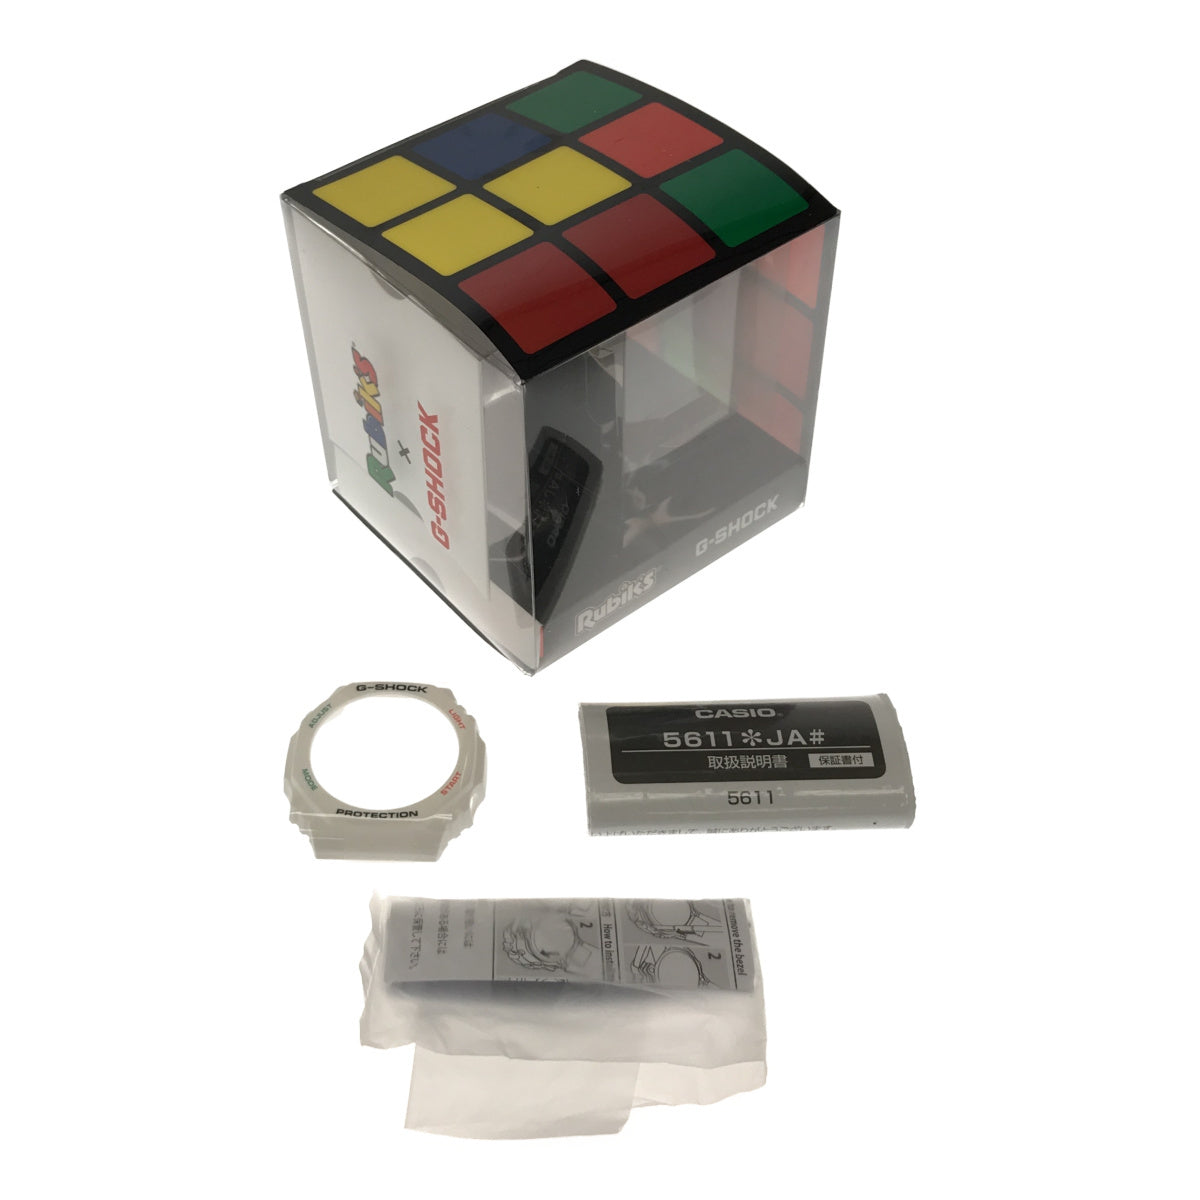 GAE-2100RC-1AJR Rubik’s Cube